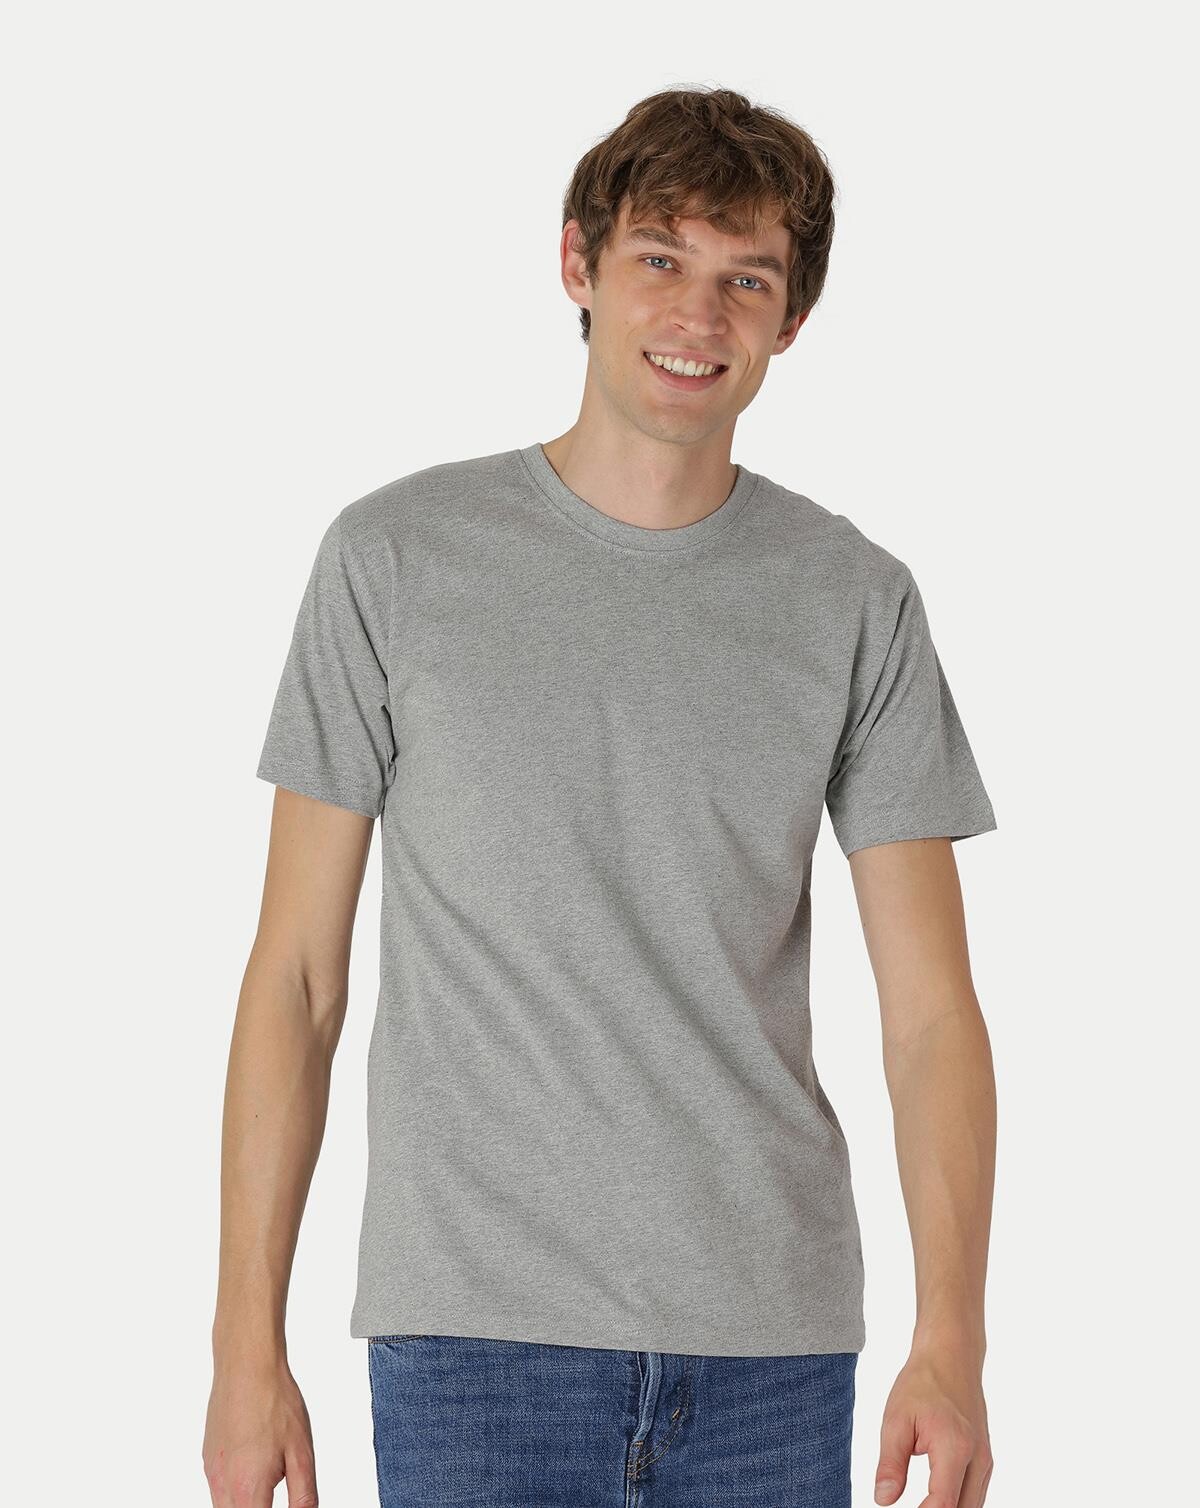 Neutral Økologisk Klassisk T-Shirt (Grå Meleret, S)